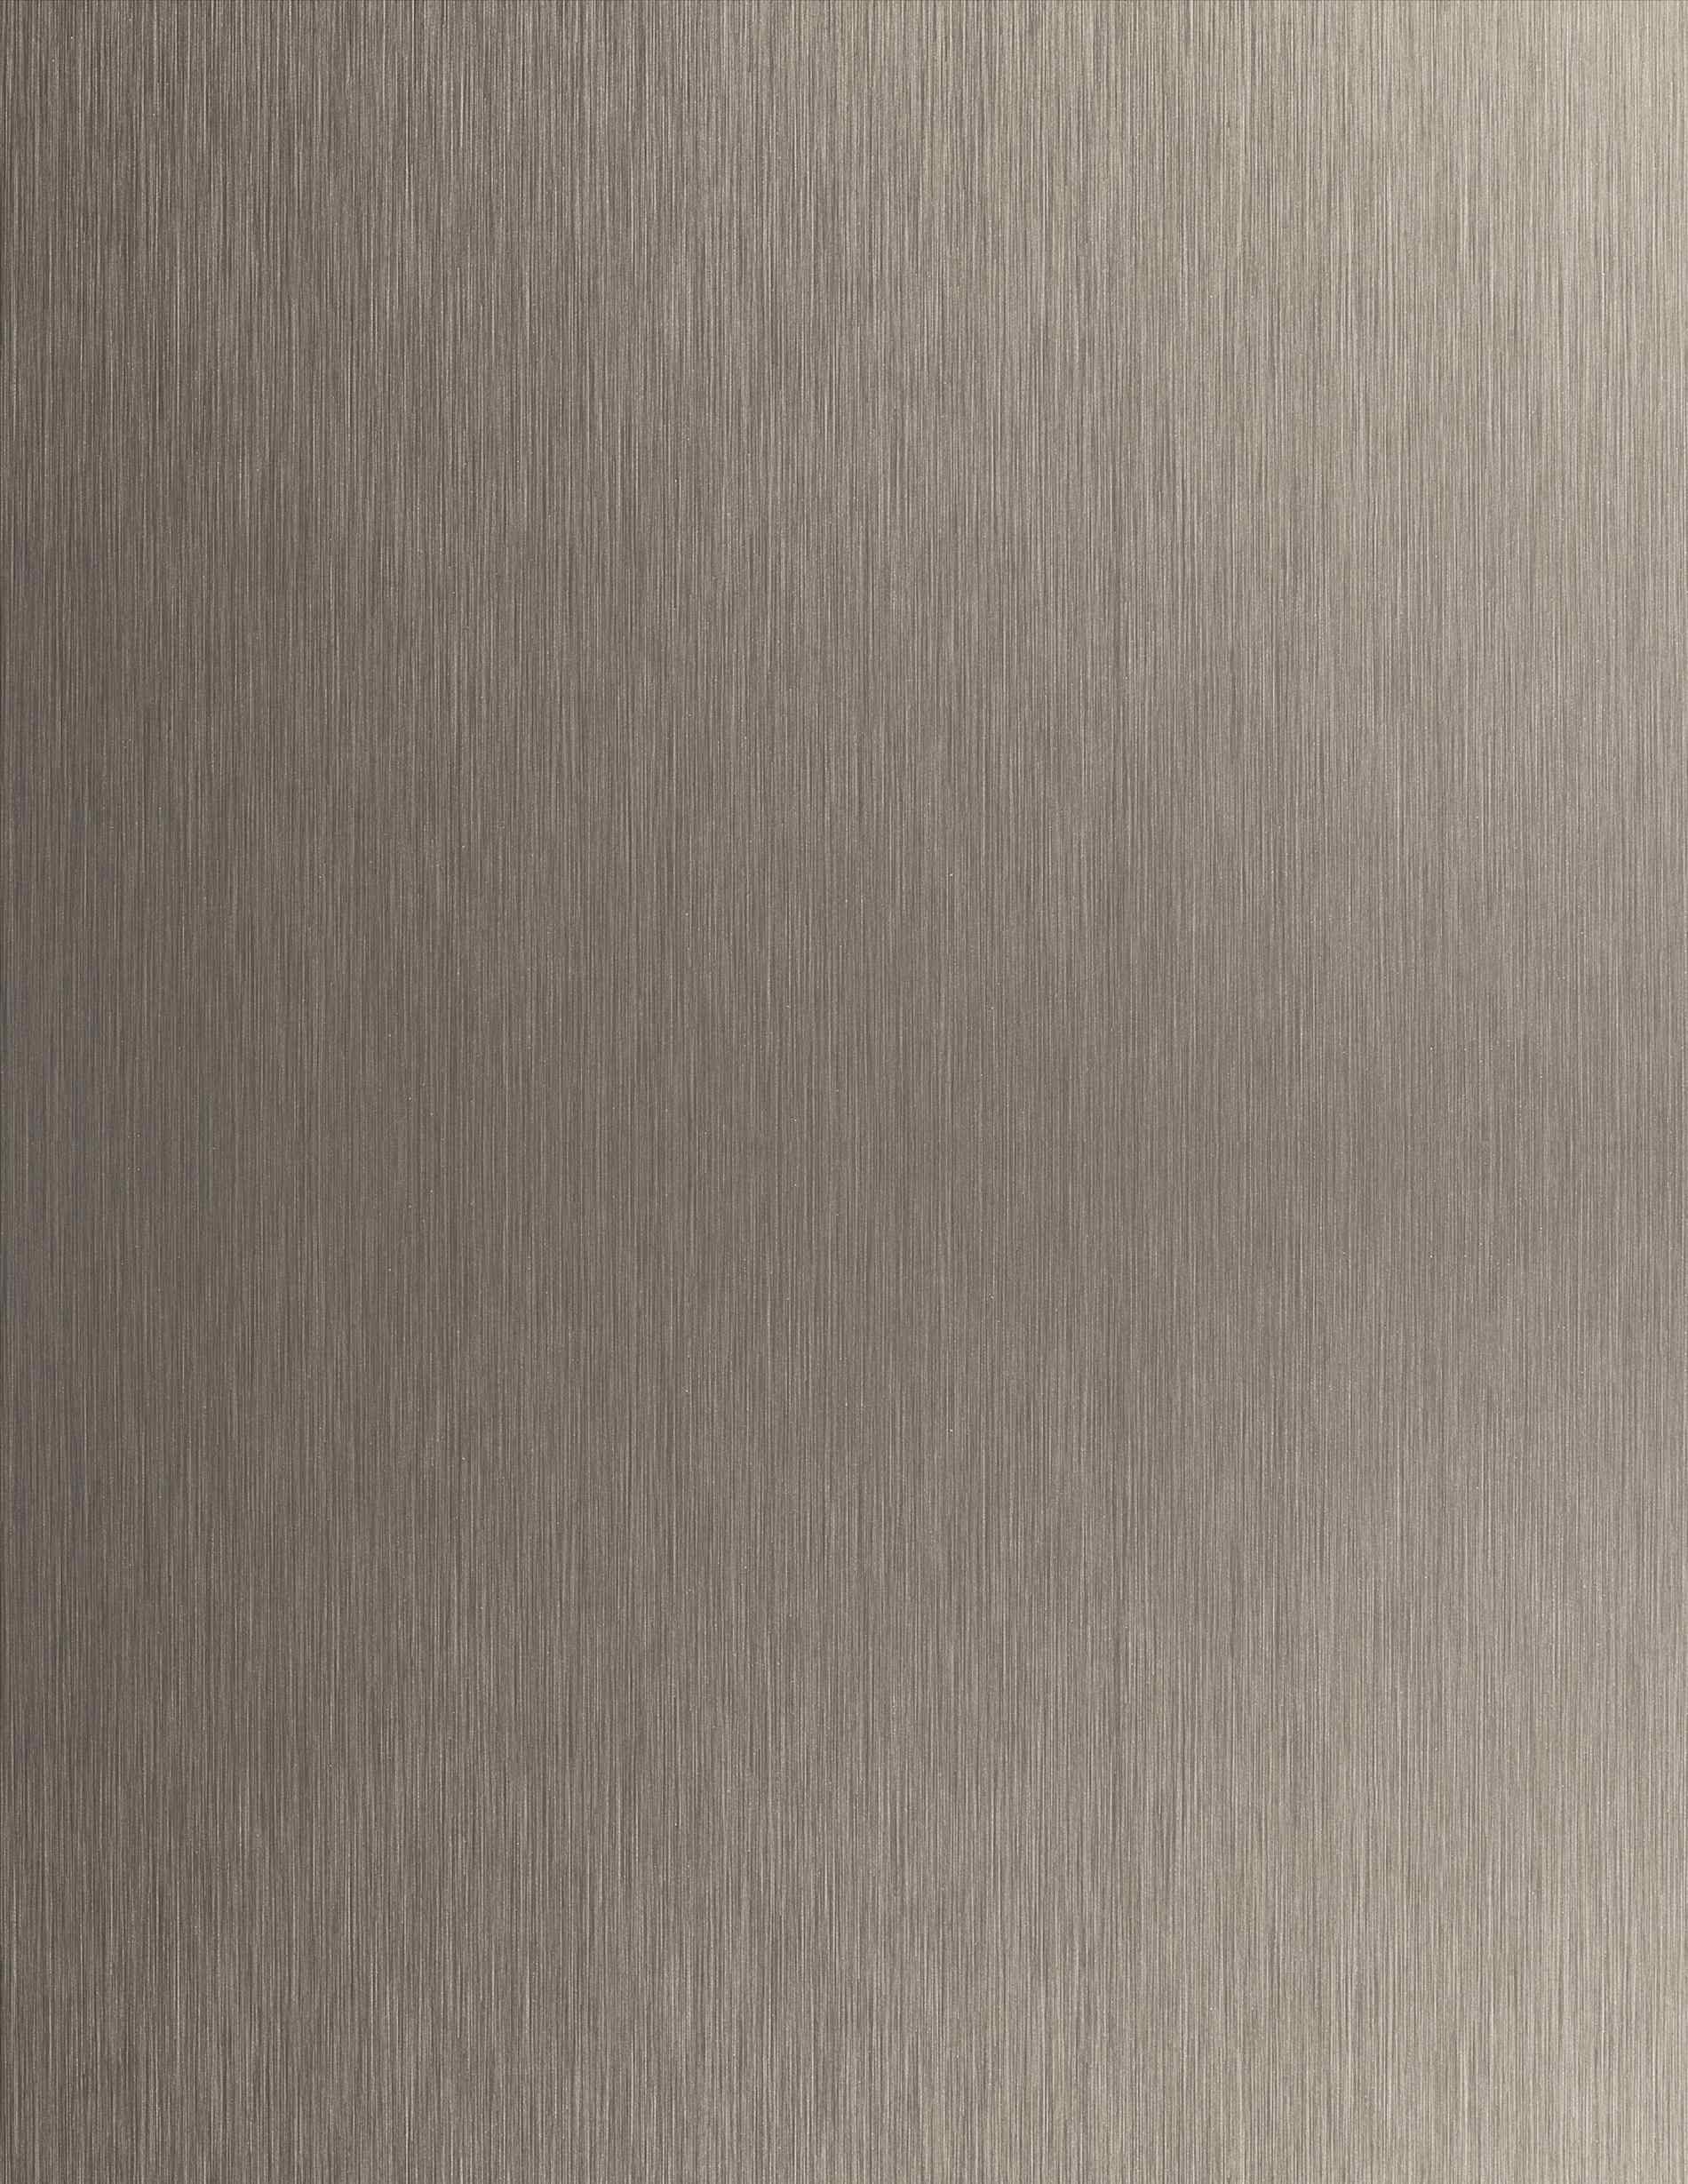 Stainless steel, Html De Aluminum Wallpaper Brushed